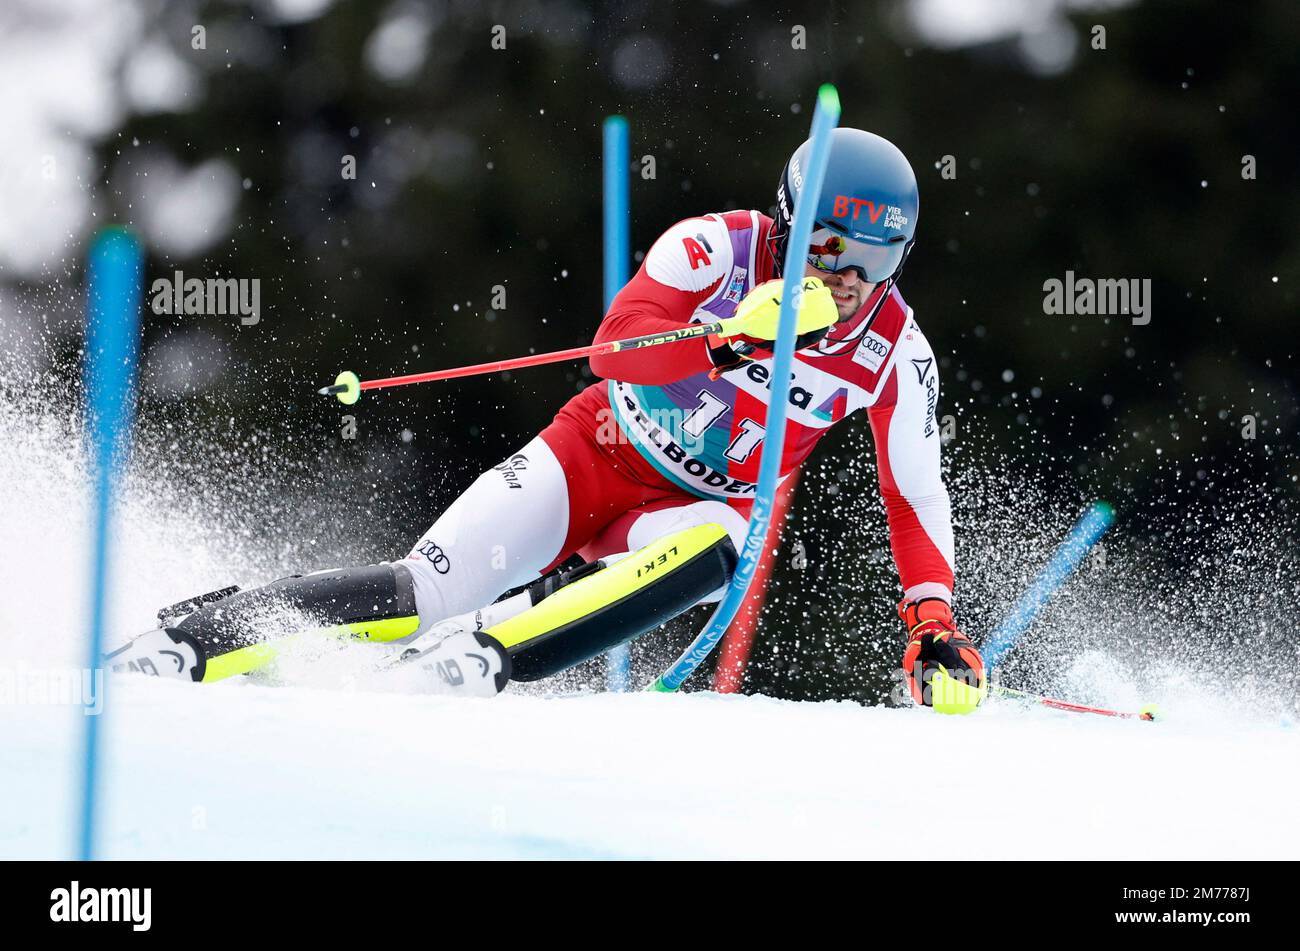 Ski alpin - FIS coupe du monde de ski alpin - Slalom masculin - Adelboden, Suisse - 8 janvier 2023 Johannes Strolz en action REUTERS/Stefan Wermuth Banque D'Images